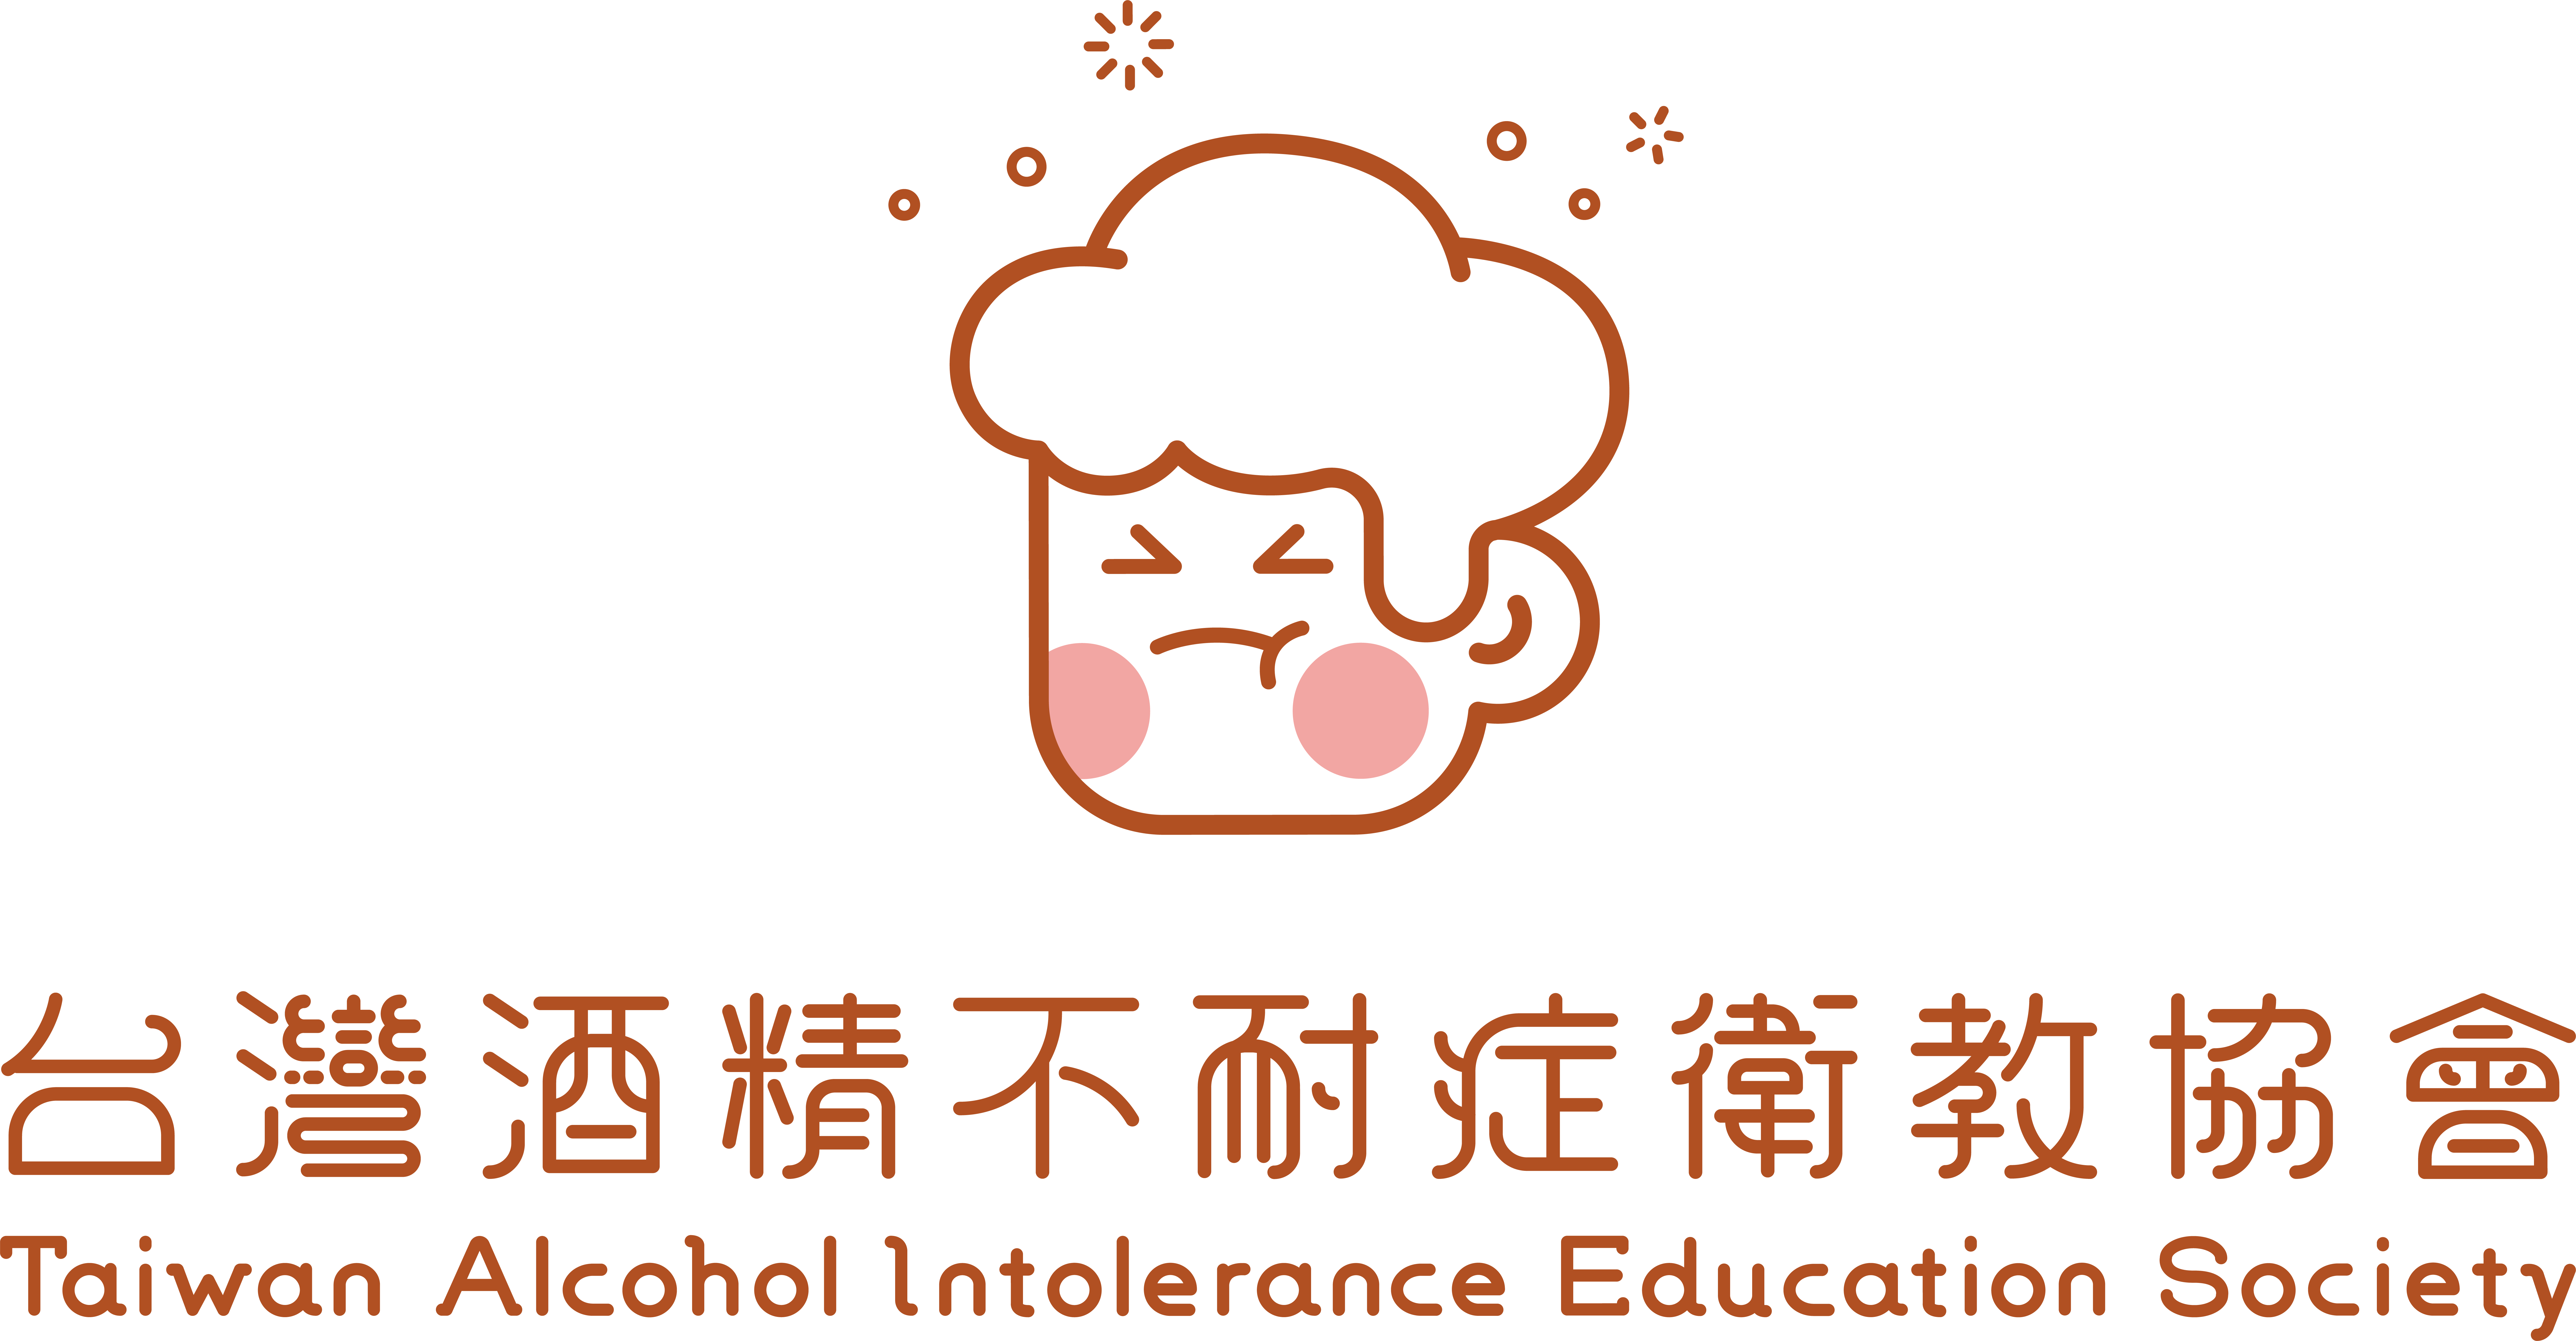 Taiwan Alcohol Intolerance Education Society